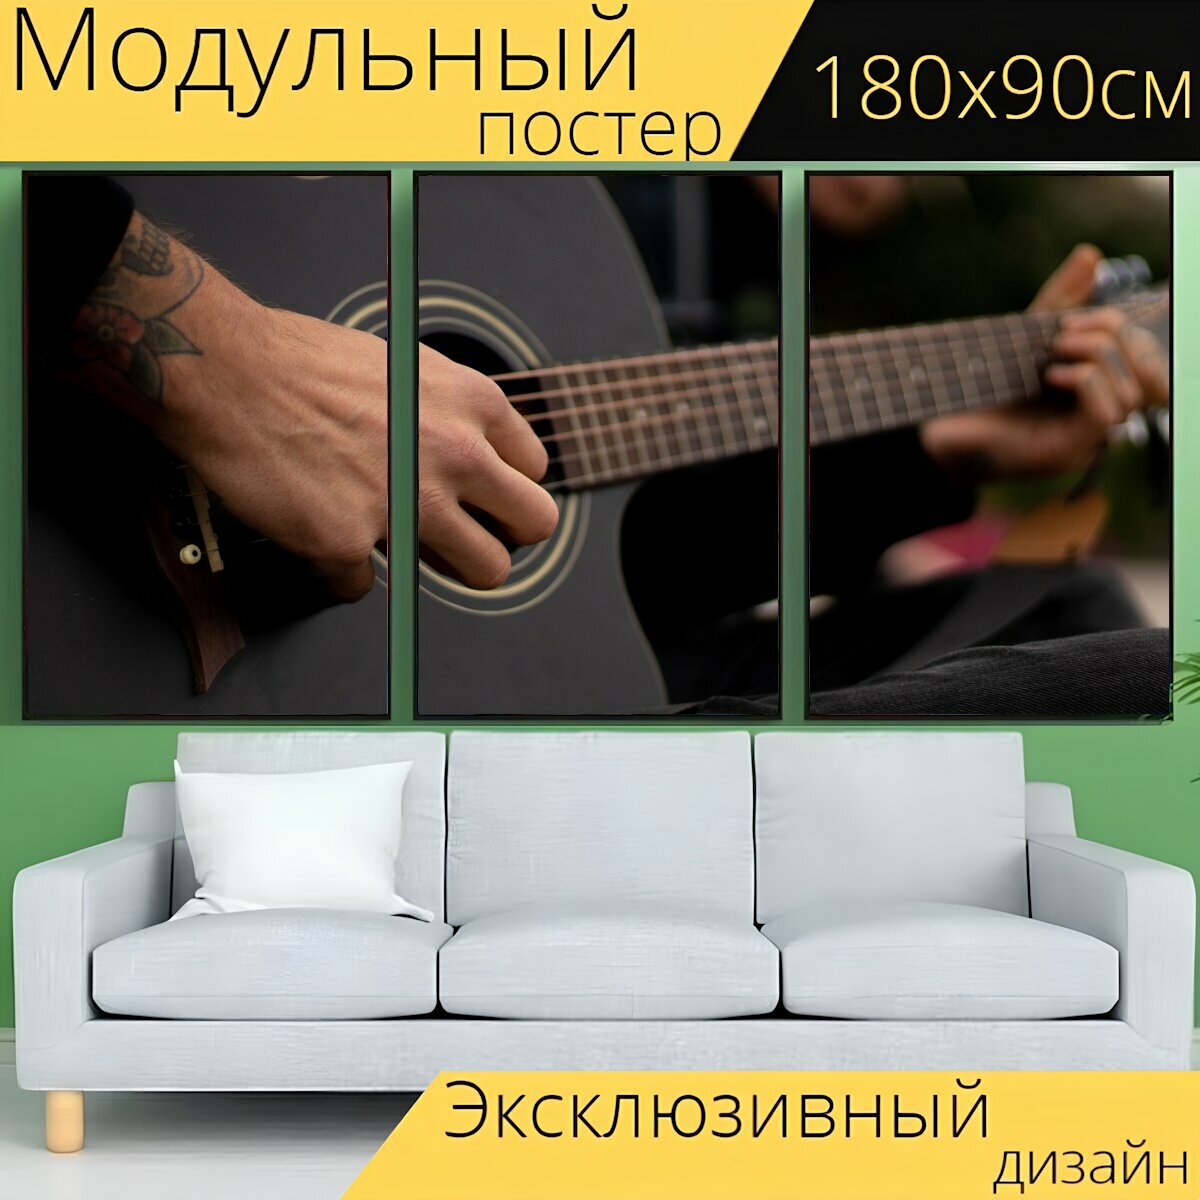 Модульный постер "Гитара, музыка, звук" 180 x 90 см. для интерьера